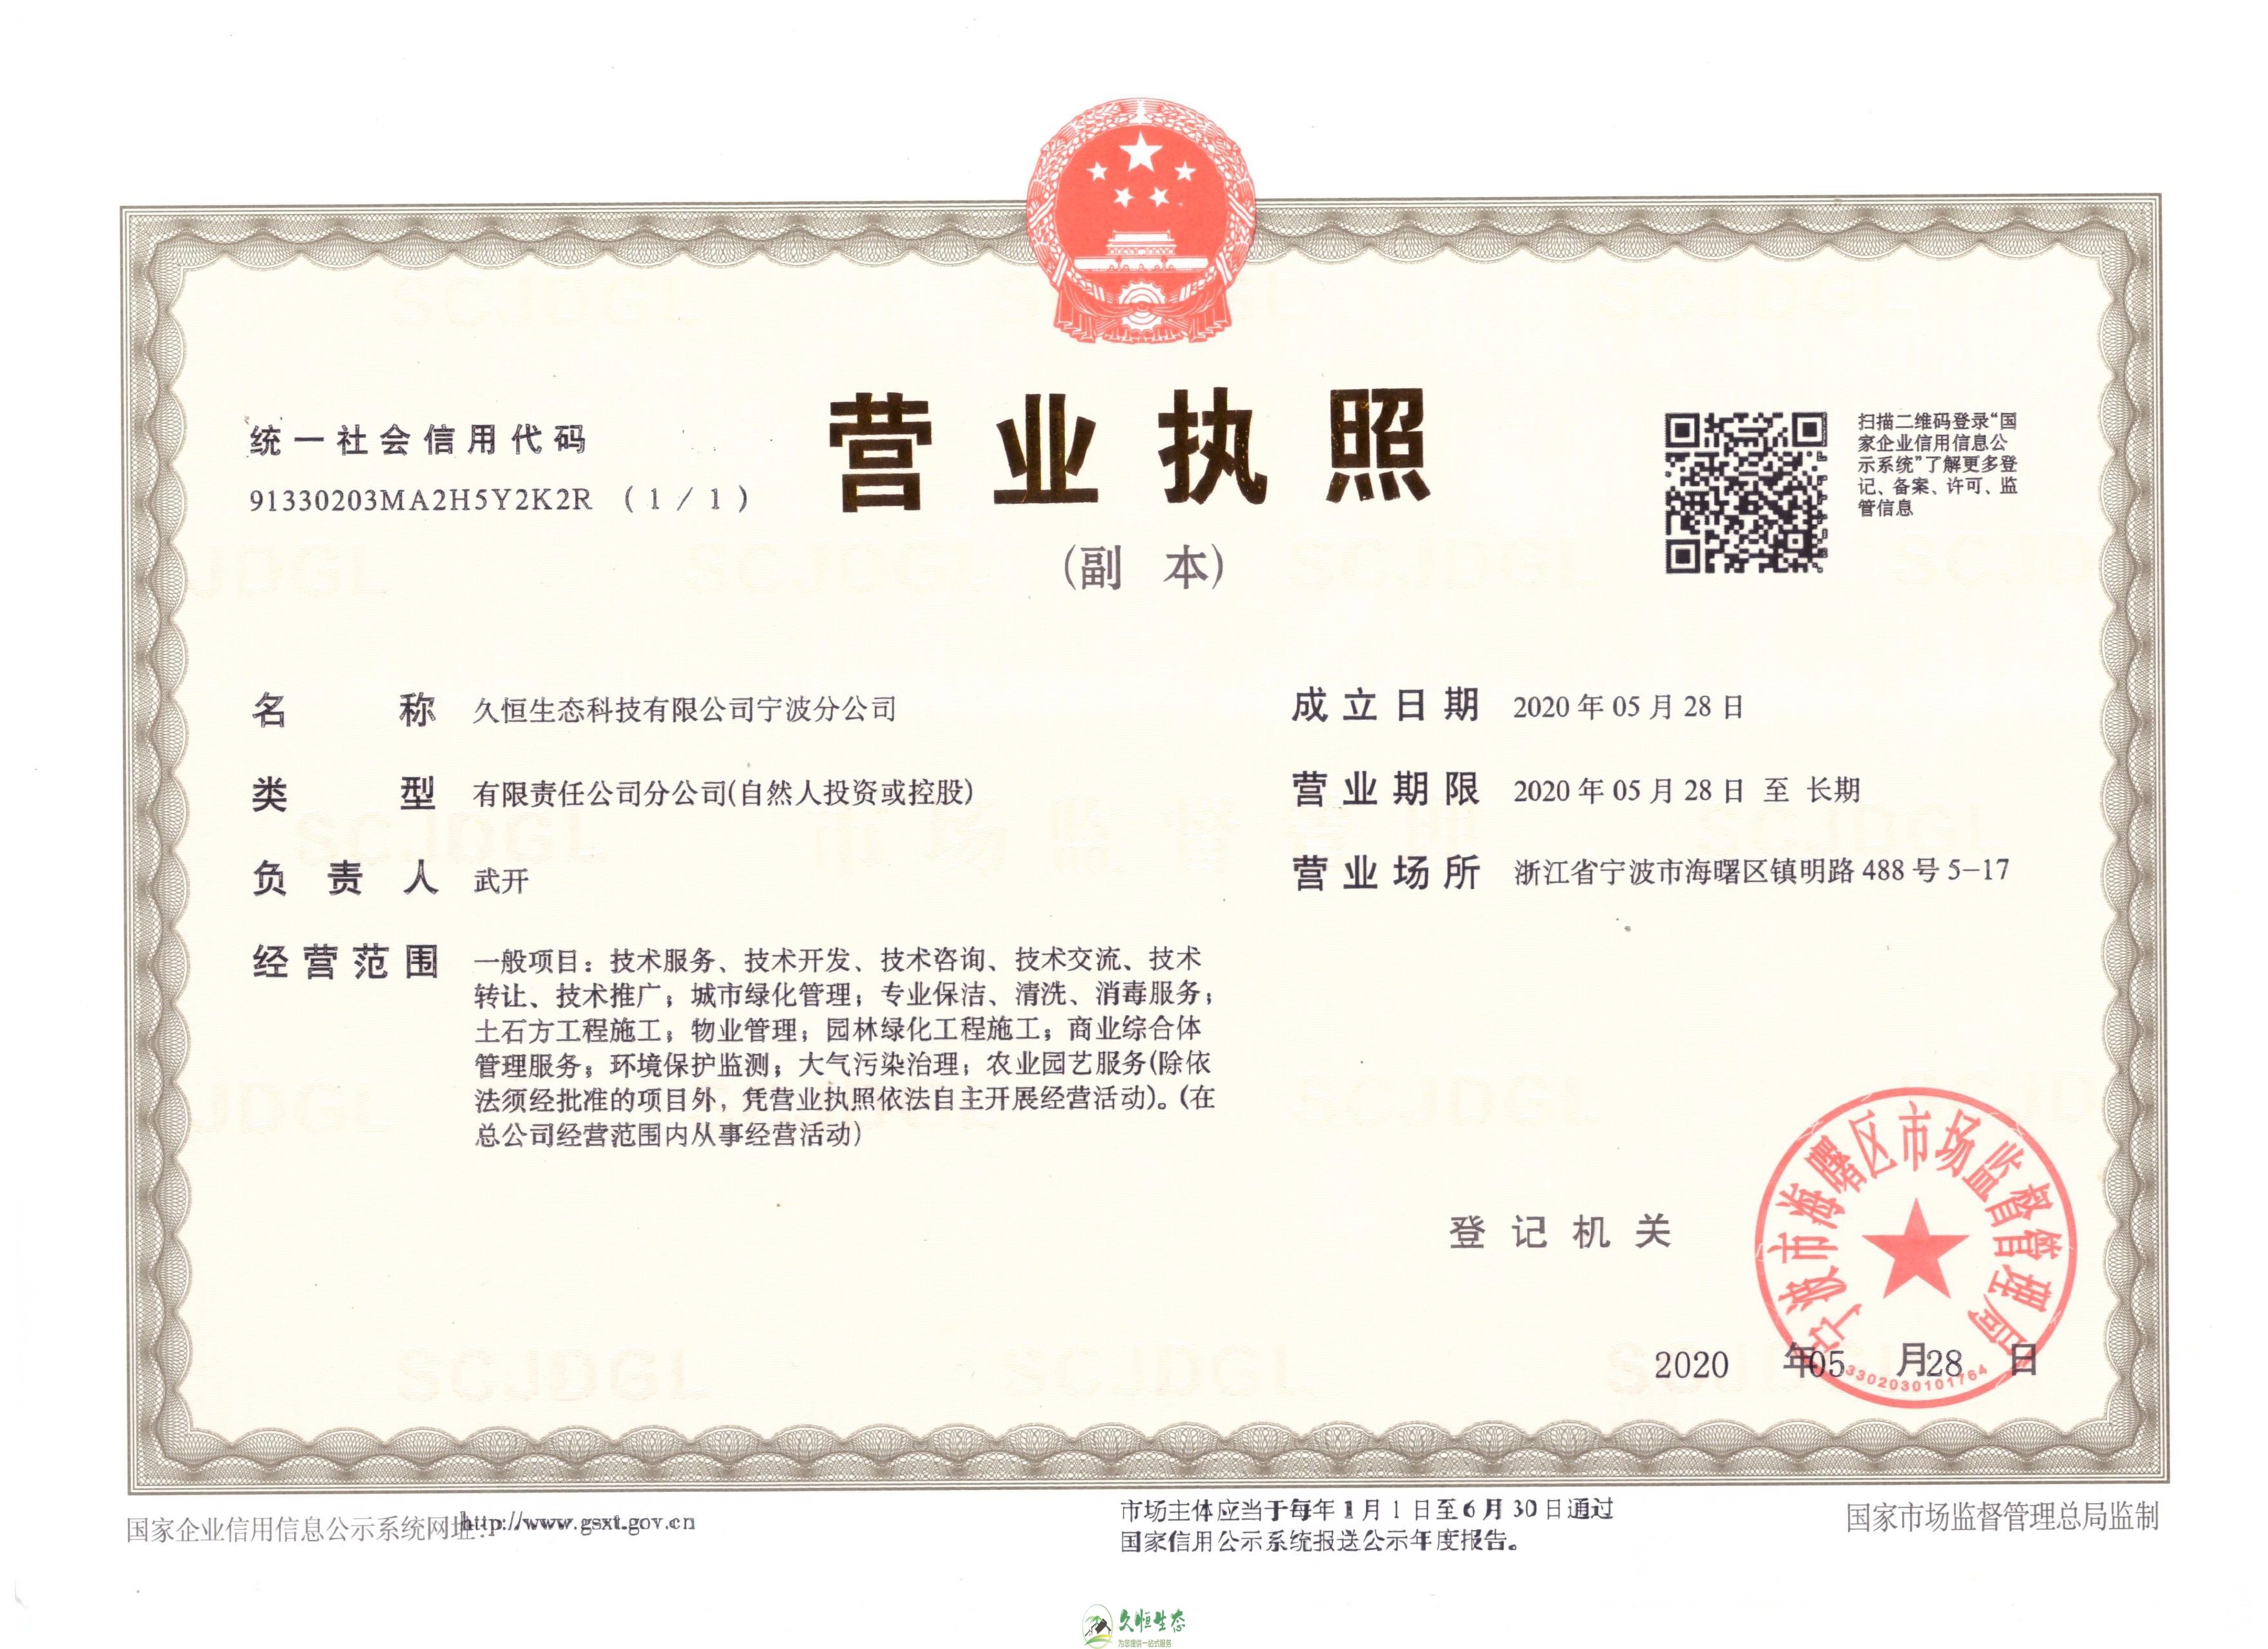 滨江久恒生态宁波分公司2020年5月28日成立